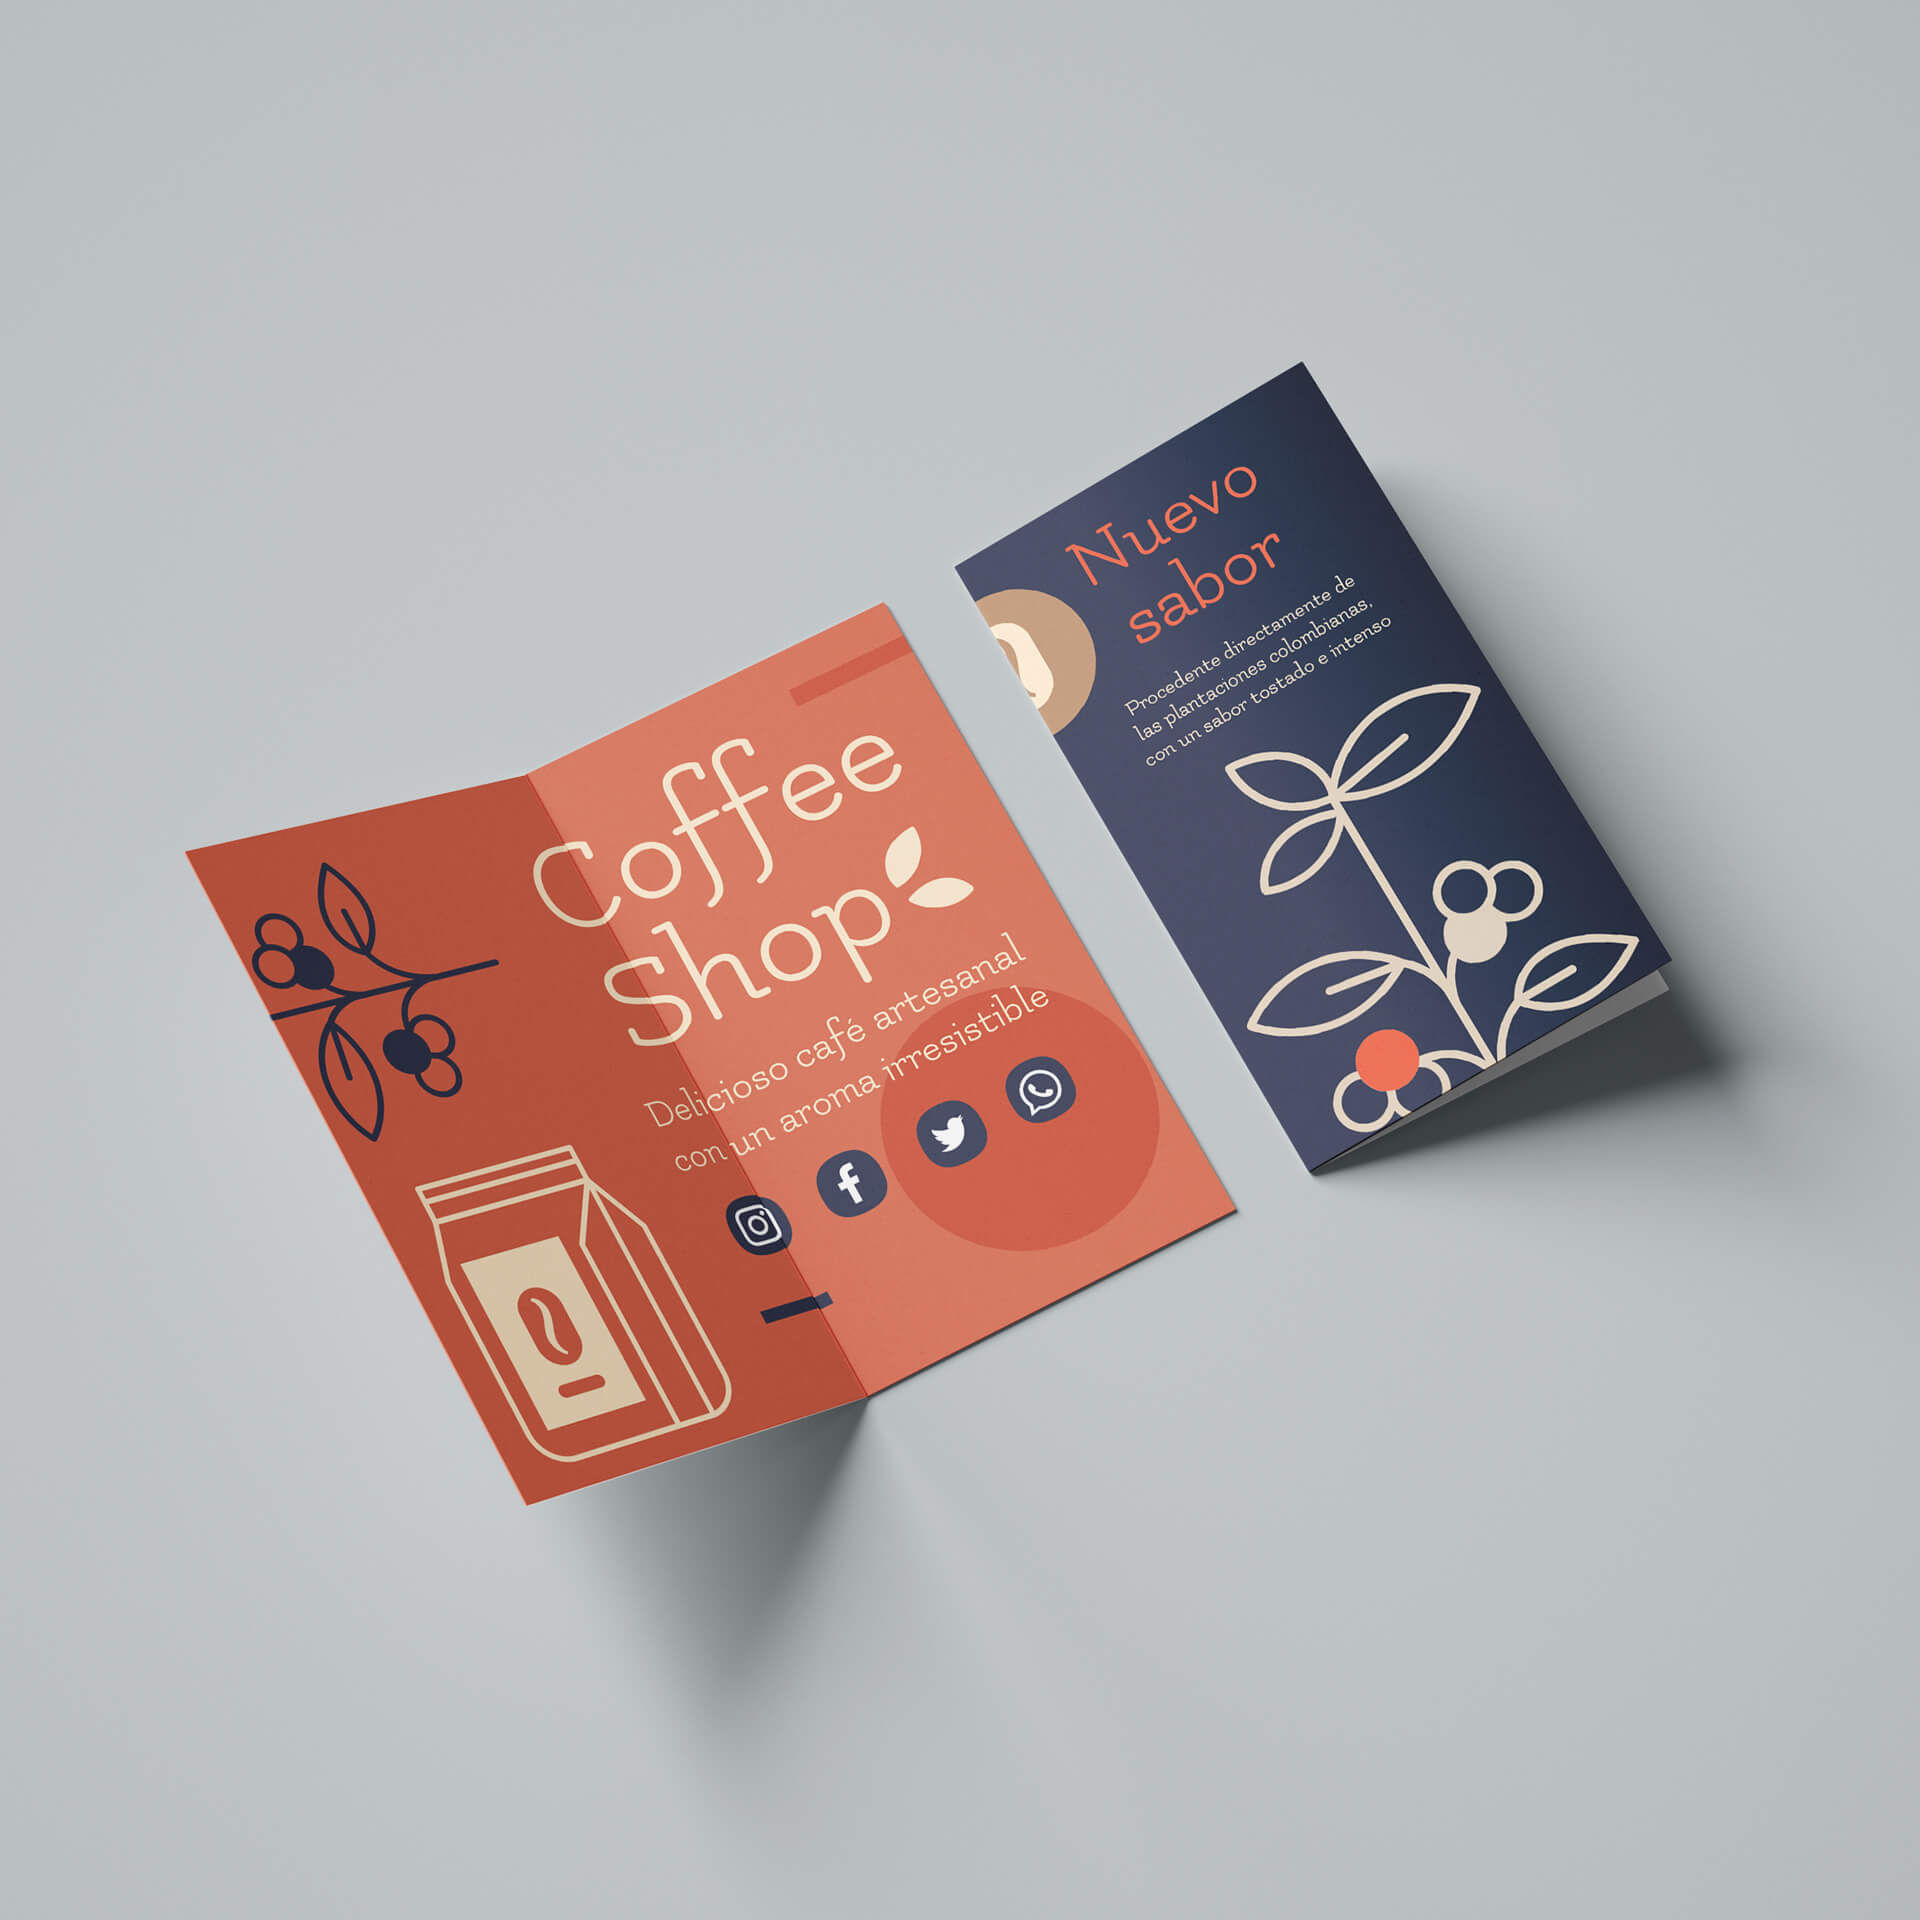 Imagen del díptico de Coffee Shop, donde publicita el nuevo sabor que han incorporado a su catálogo de cafés. El folleto está impreso a todo color, en un naranja-rojizo apagado que hace contraste con el azul marino de la portada.